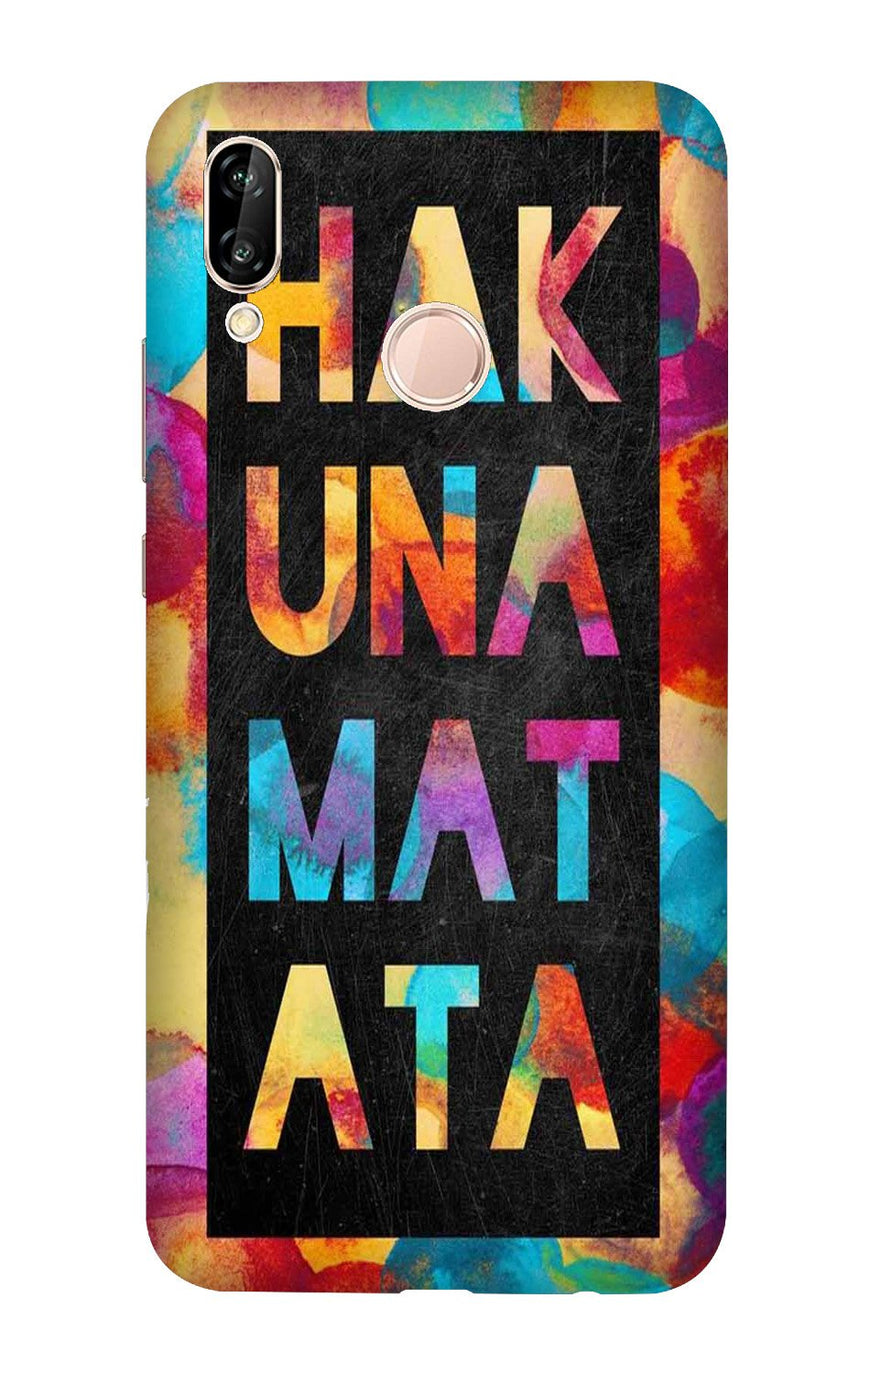 Hakuna Matata Mobile Back Case for Lenovo A6 Note (Design - 323)